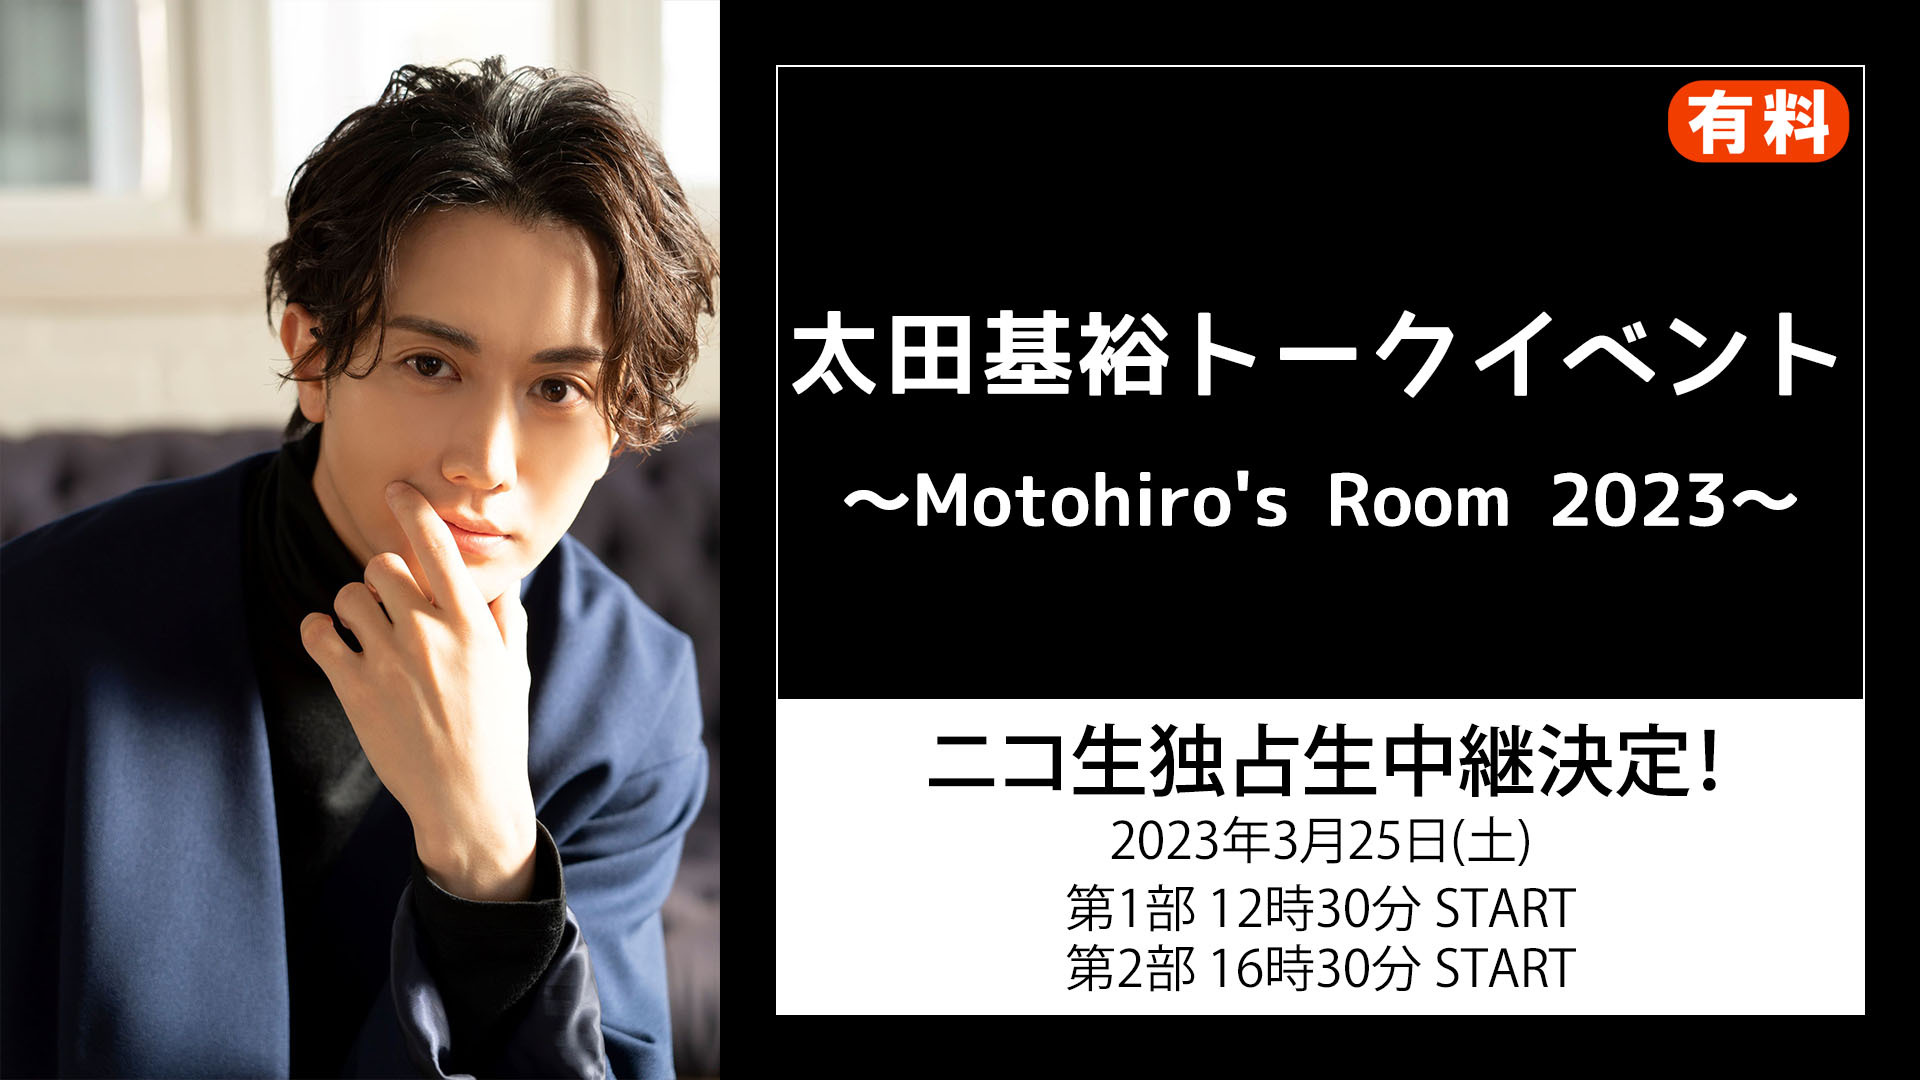 「太田基裕トークイベント～Motohiro's Room 2023～」全2部 ニコ生独占生中継